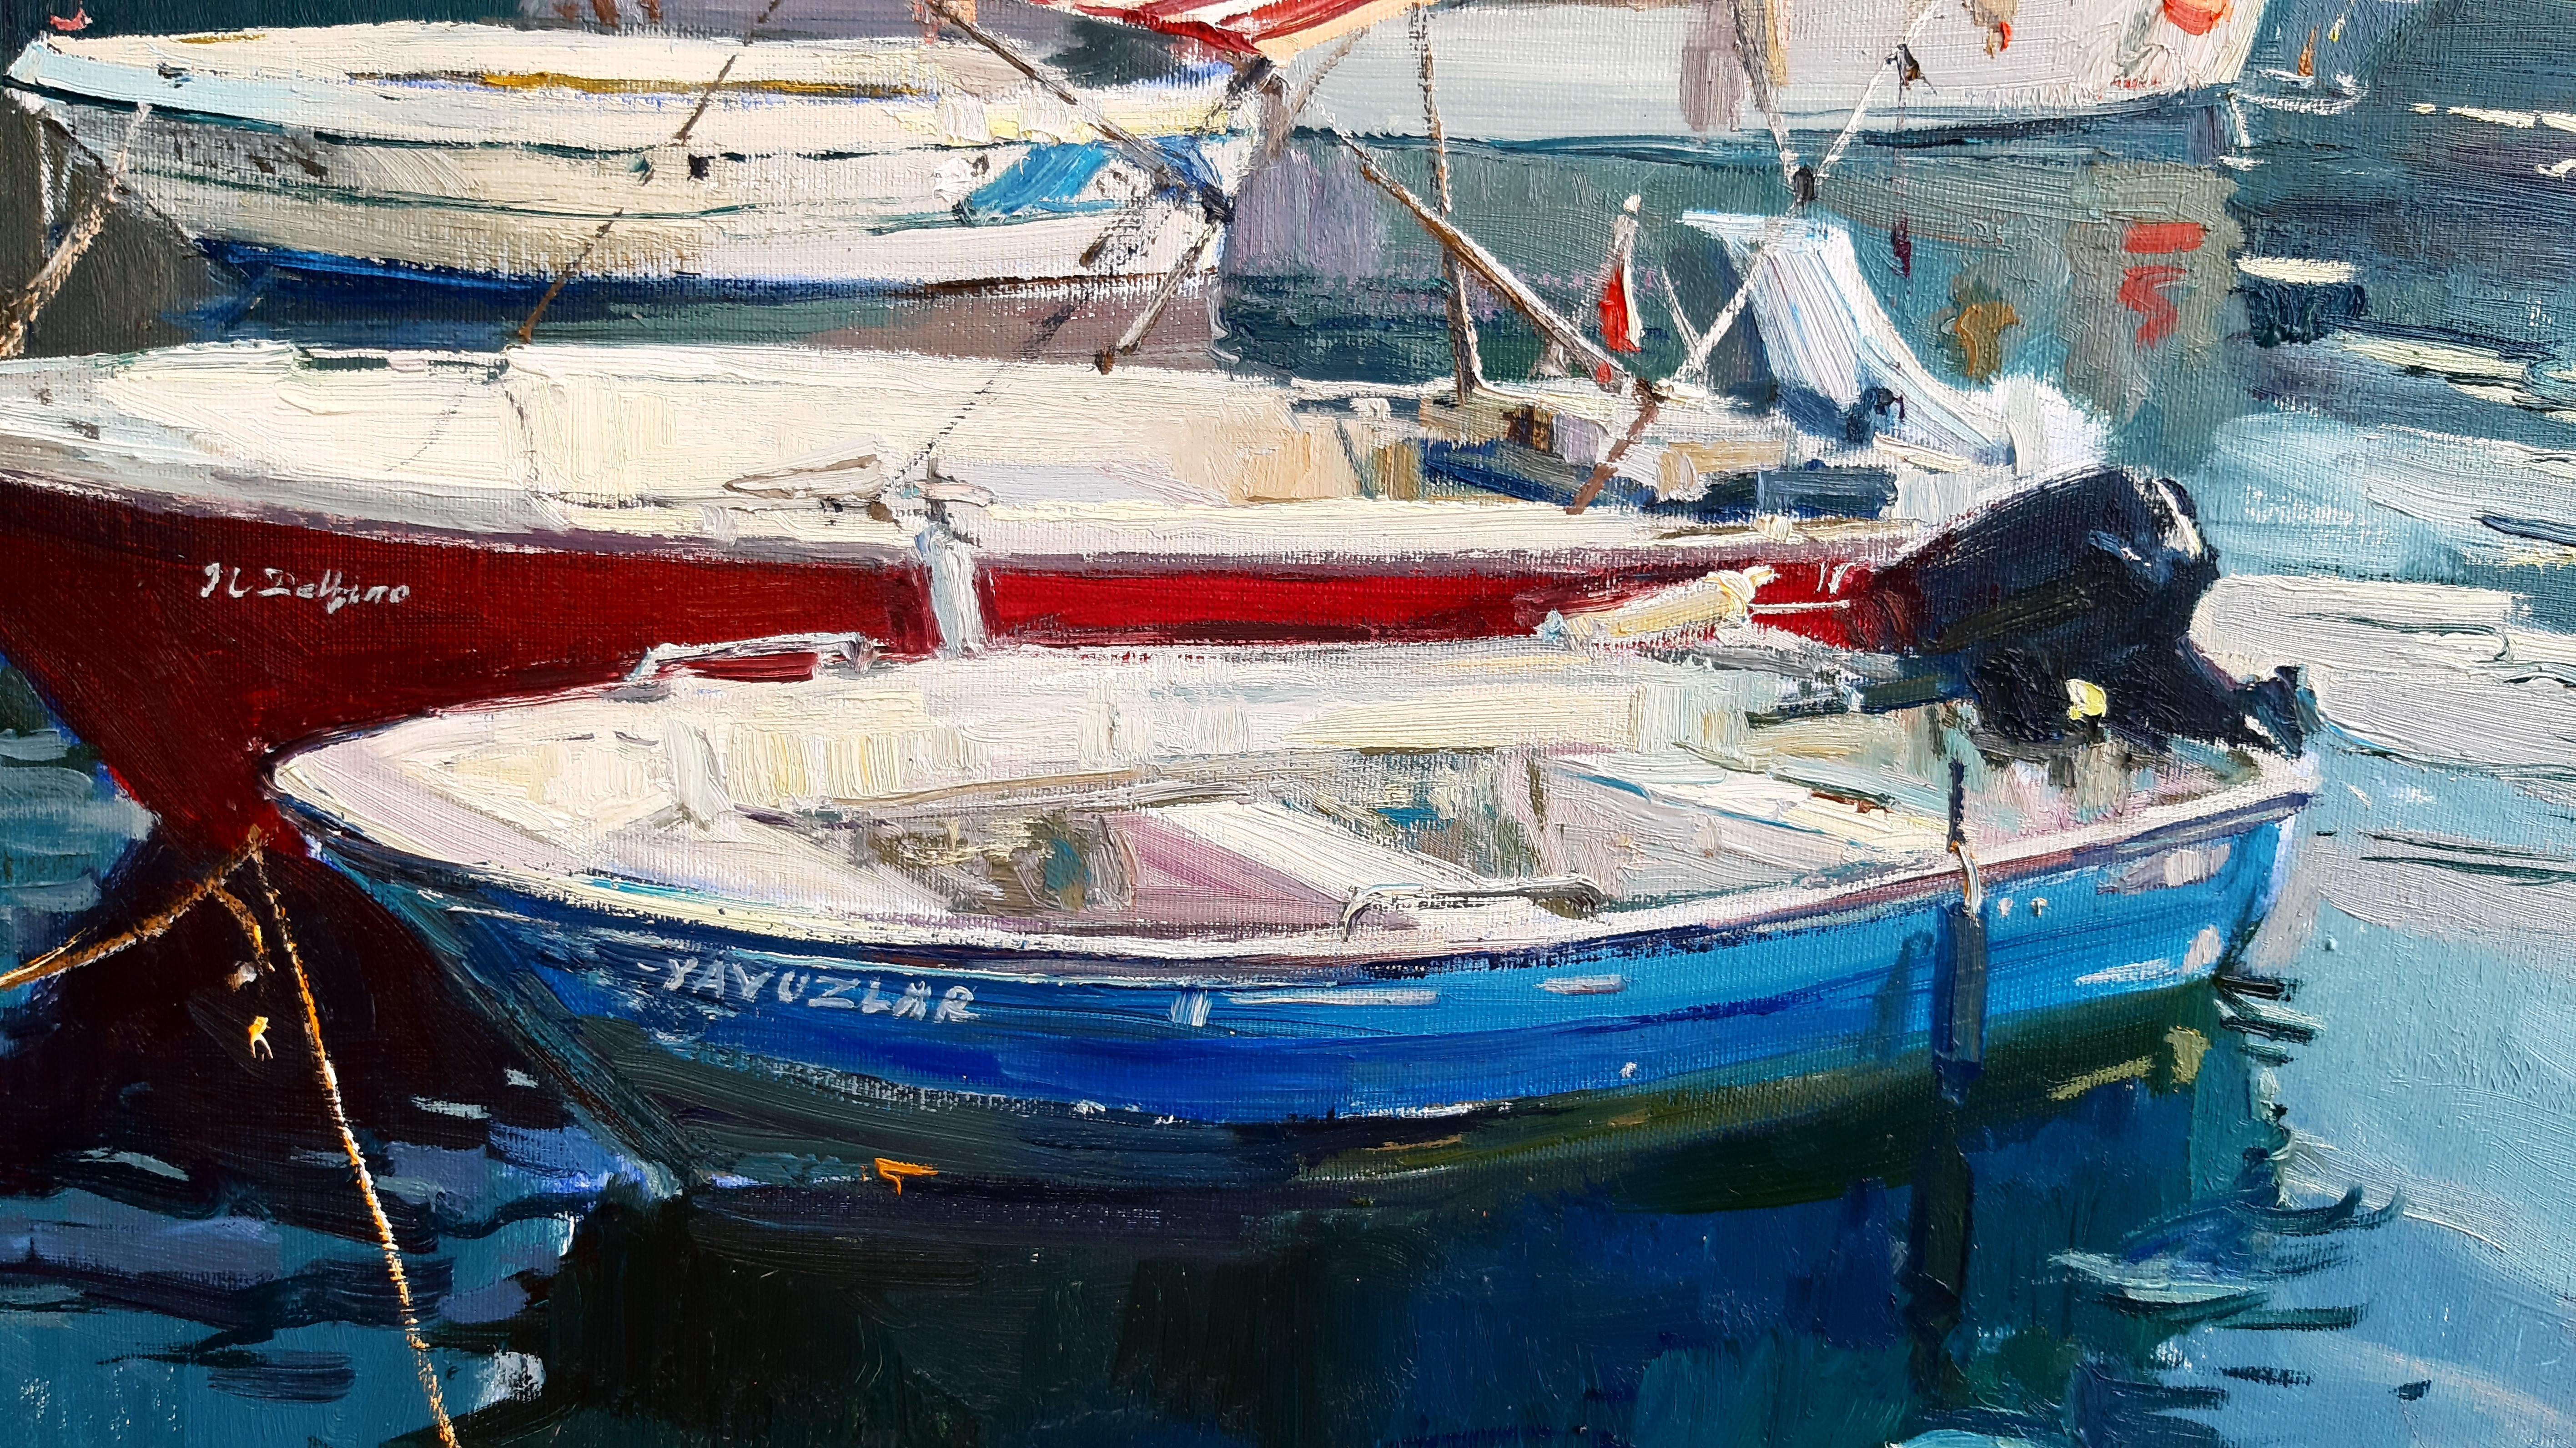 Wharf – maritime Landschaft, Gemälde in Farben Blau, Grün, Weiß, Braun und Grau (Impressionismus), Painting, von Alina Khrapchynska